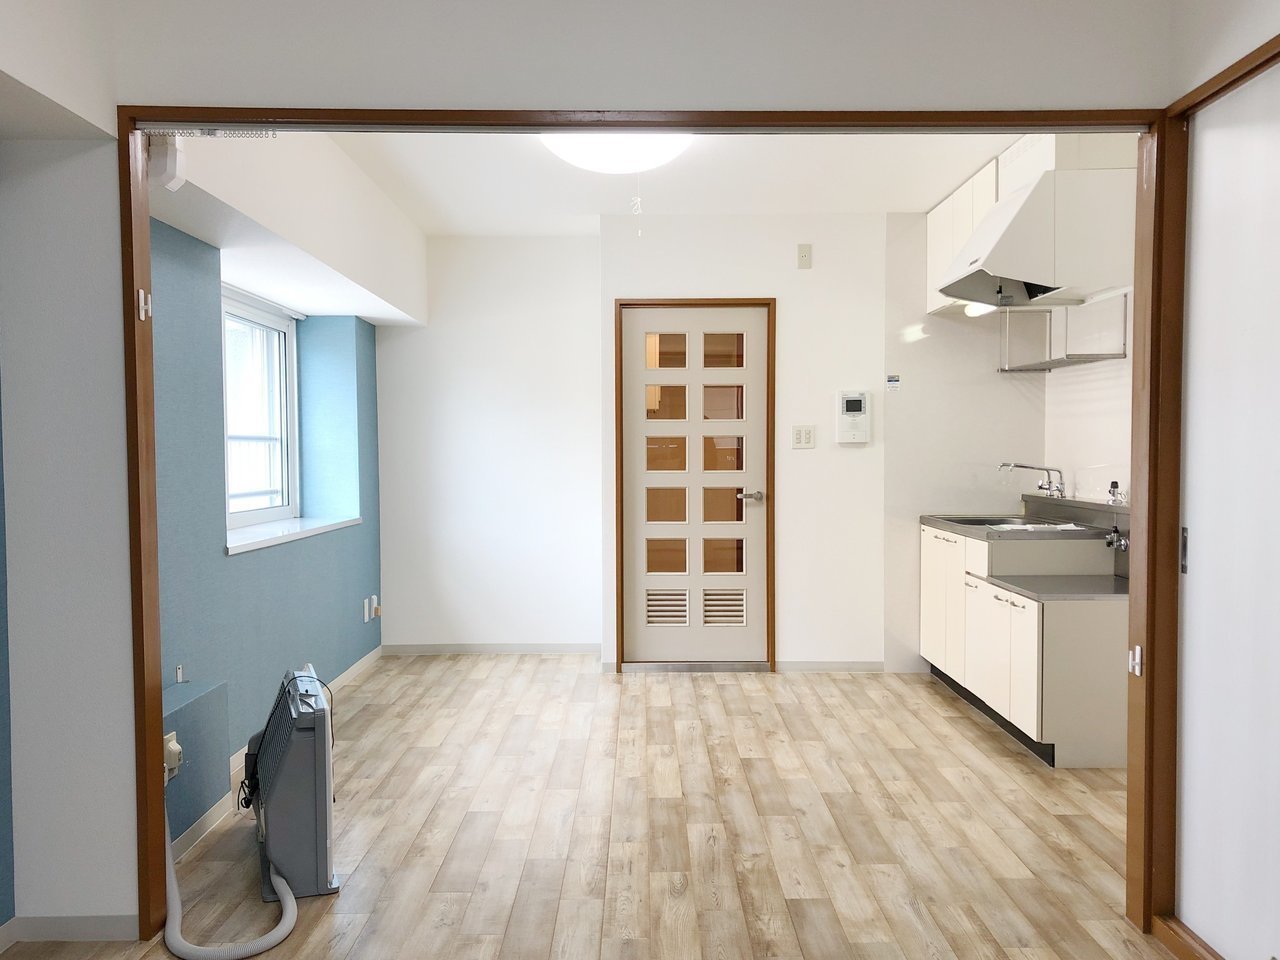 作業スペースも確保できる広めのキッチンも完備。一人暮らしには十分な設備・広さのお部屋です。